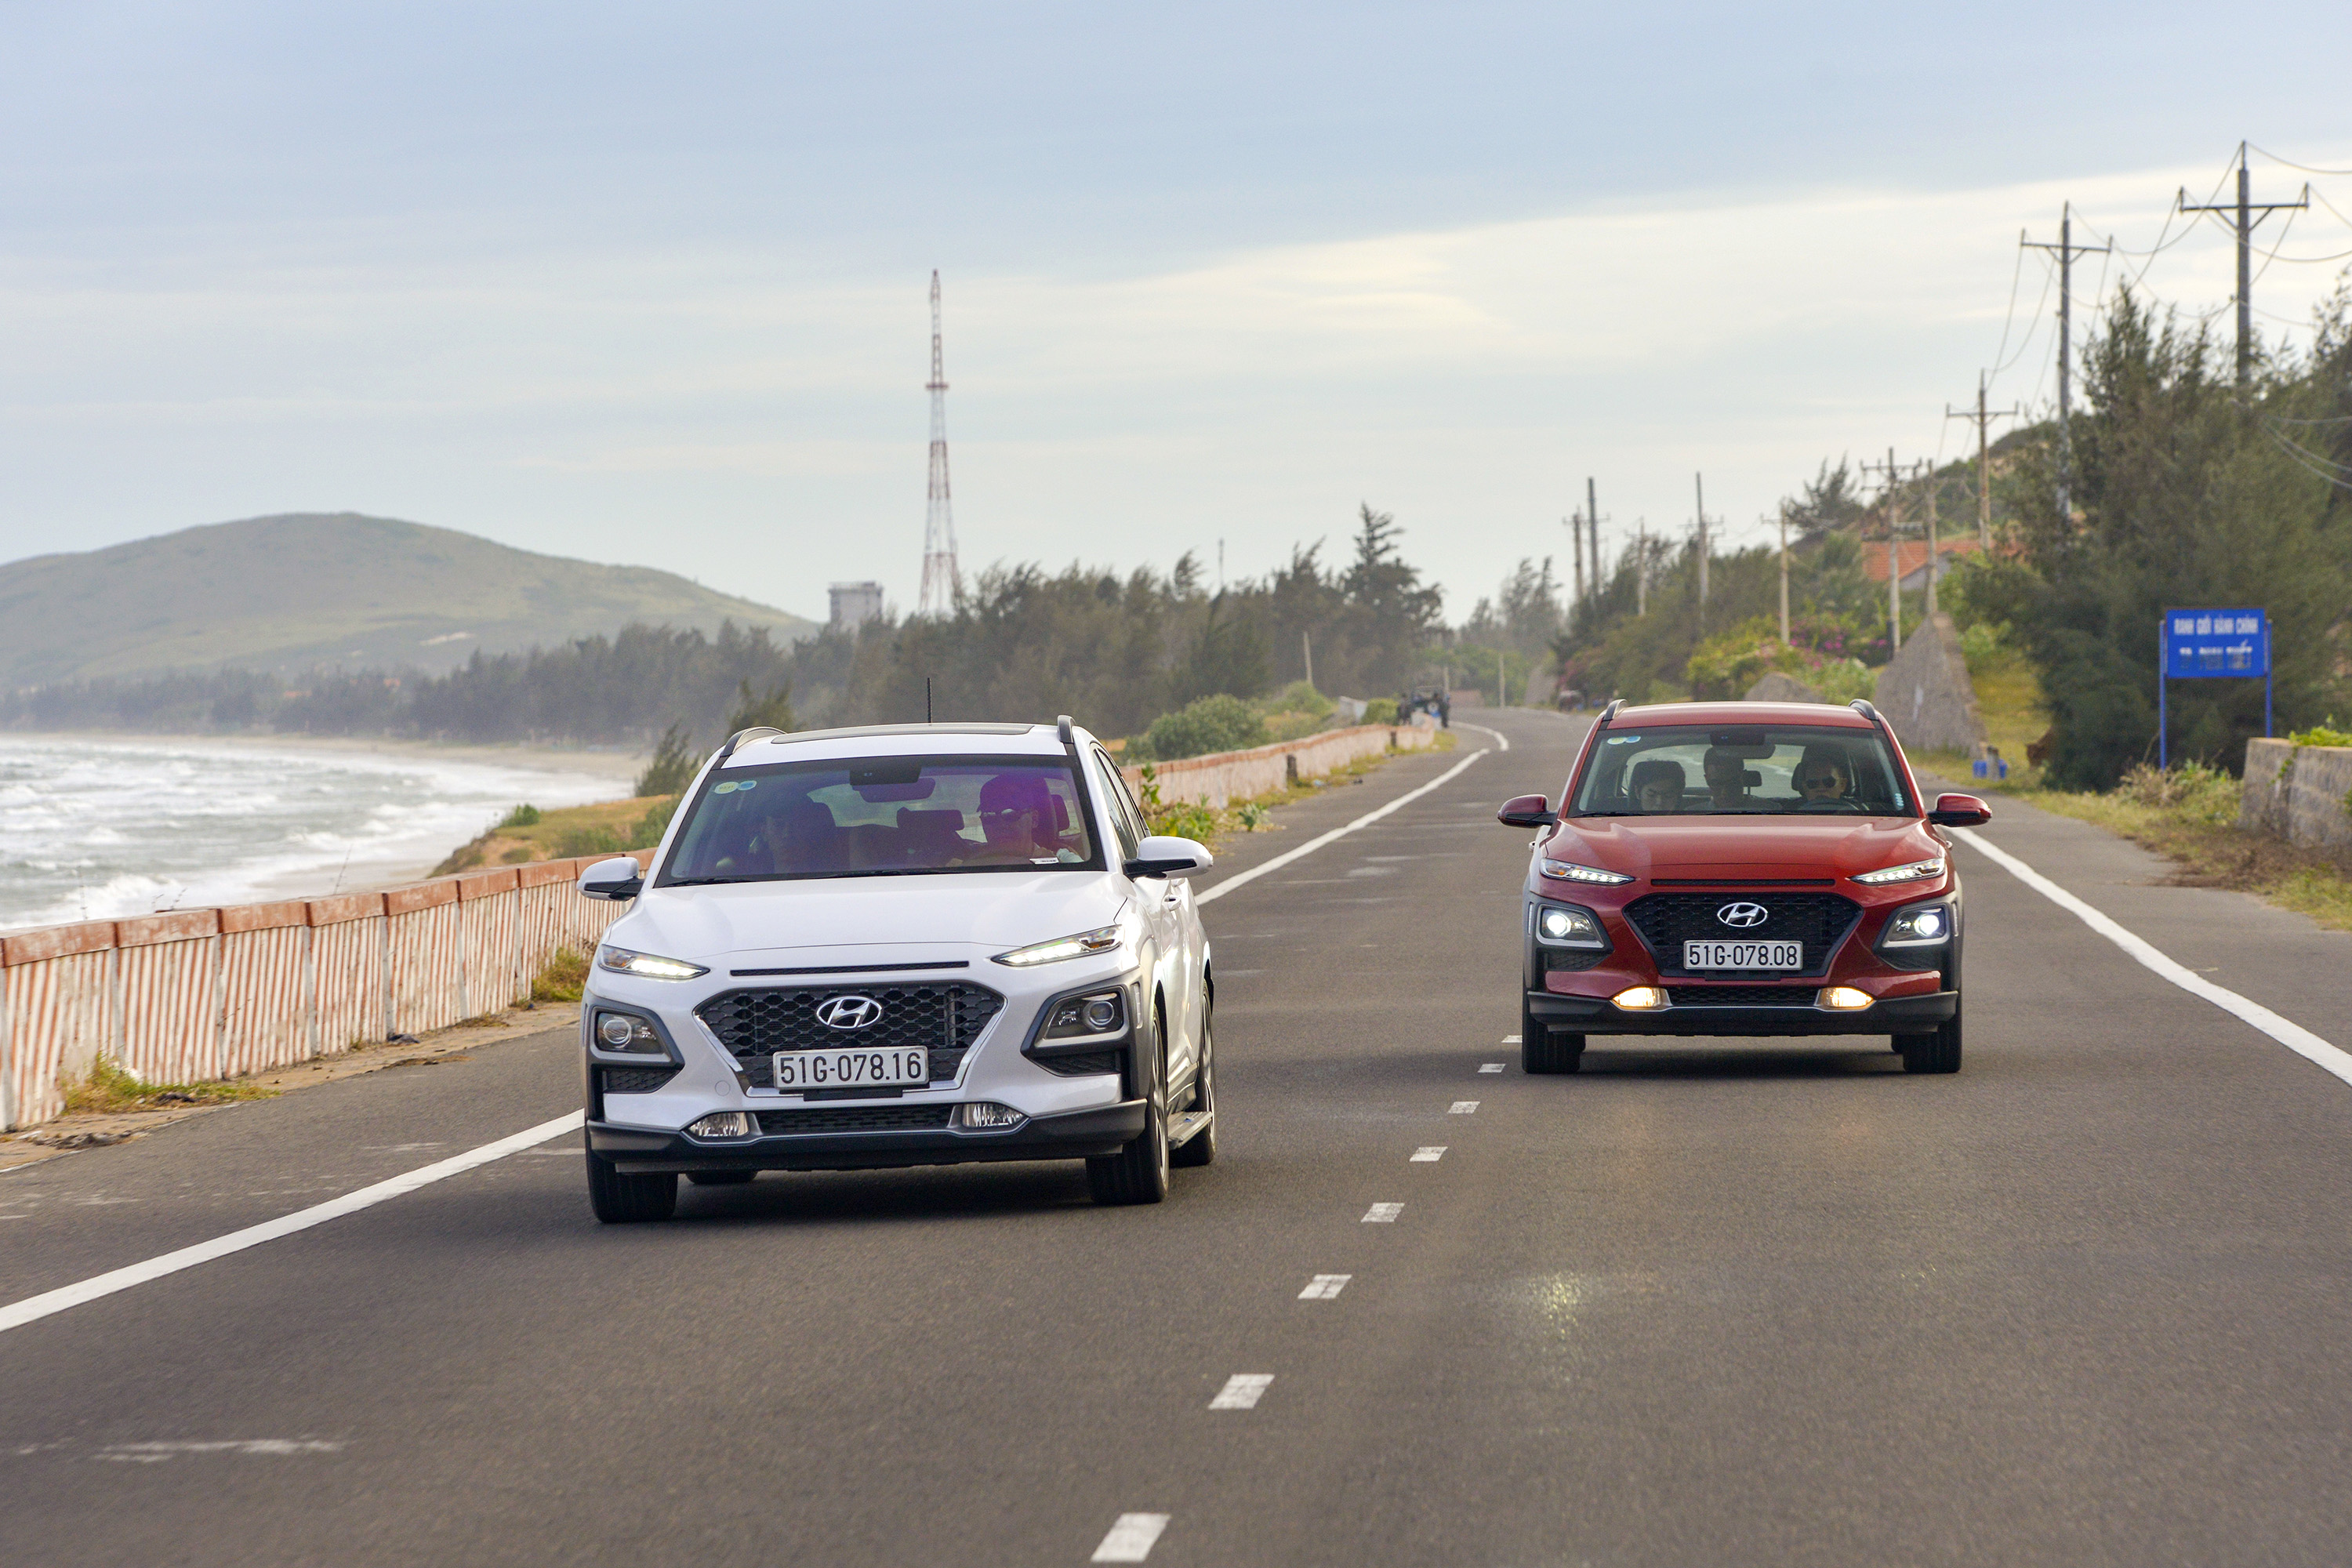 Thiếu hụt linh kiện, Hyundai Kona tạm dừng bán tại Việt Nam từ tháng 6